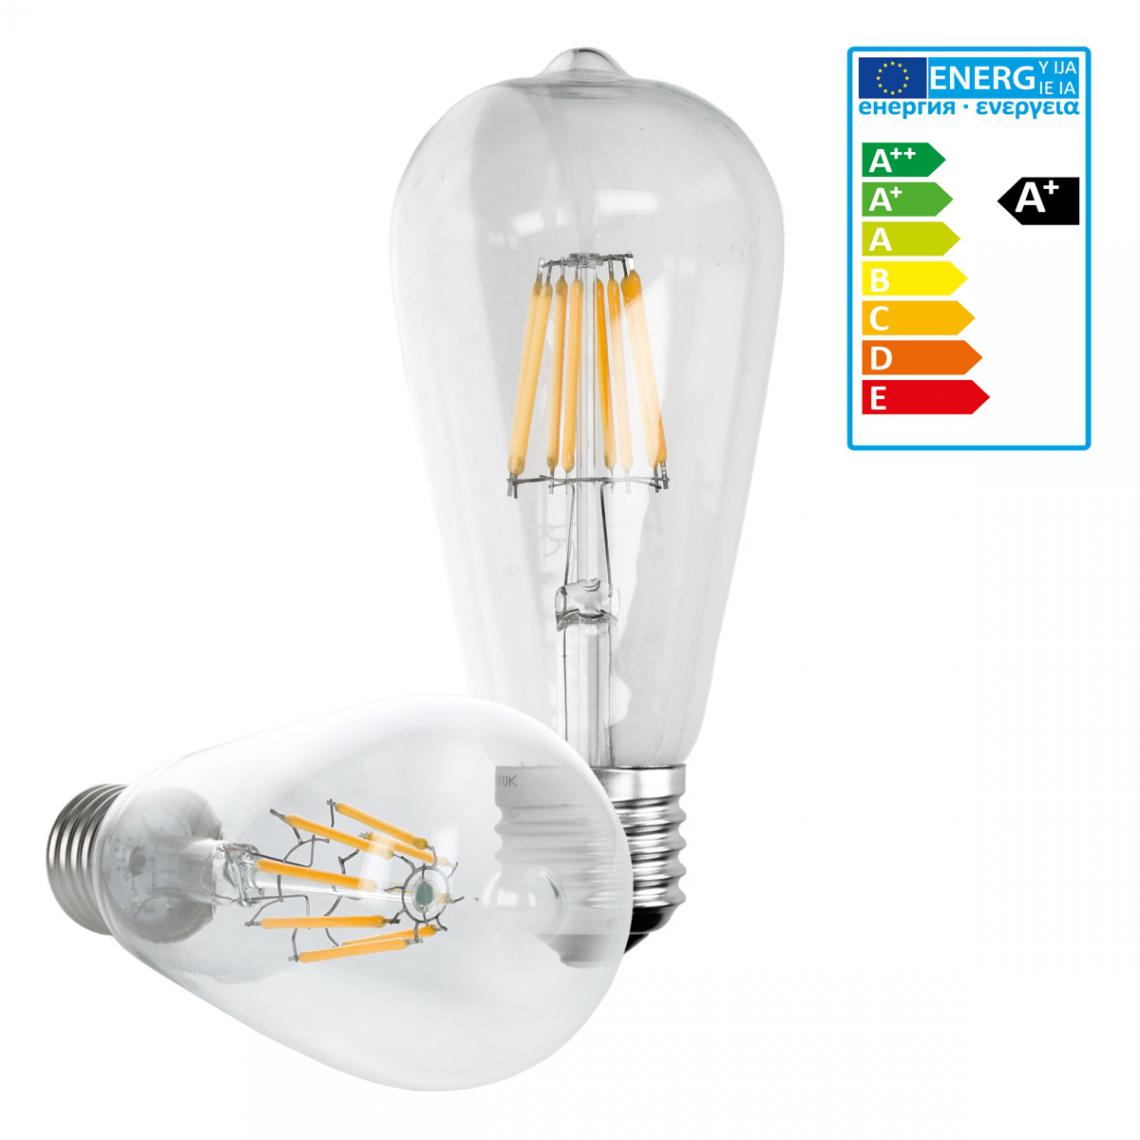 Ecd Germany - ECD Germany 5 x LED Filament de l'ampoule E27 classique Edison 8W 816 lumens angle de faisceau 120 ° AC 220-240 reste caché et remplace environ 45W lampe incandescente blanc chaud - Ampoules LED